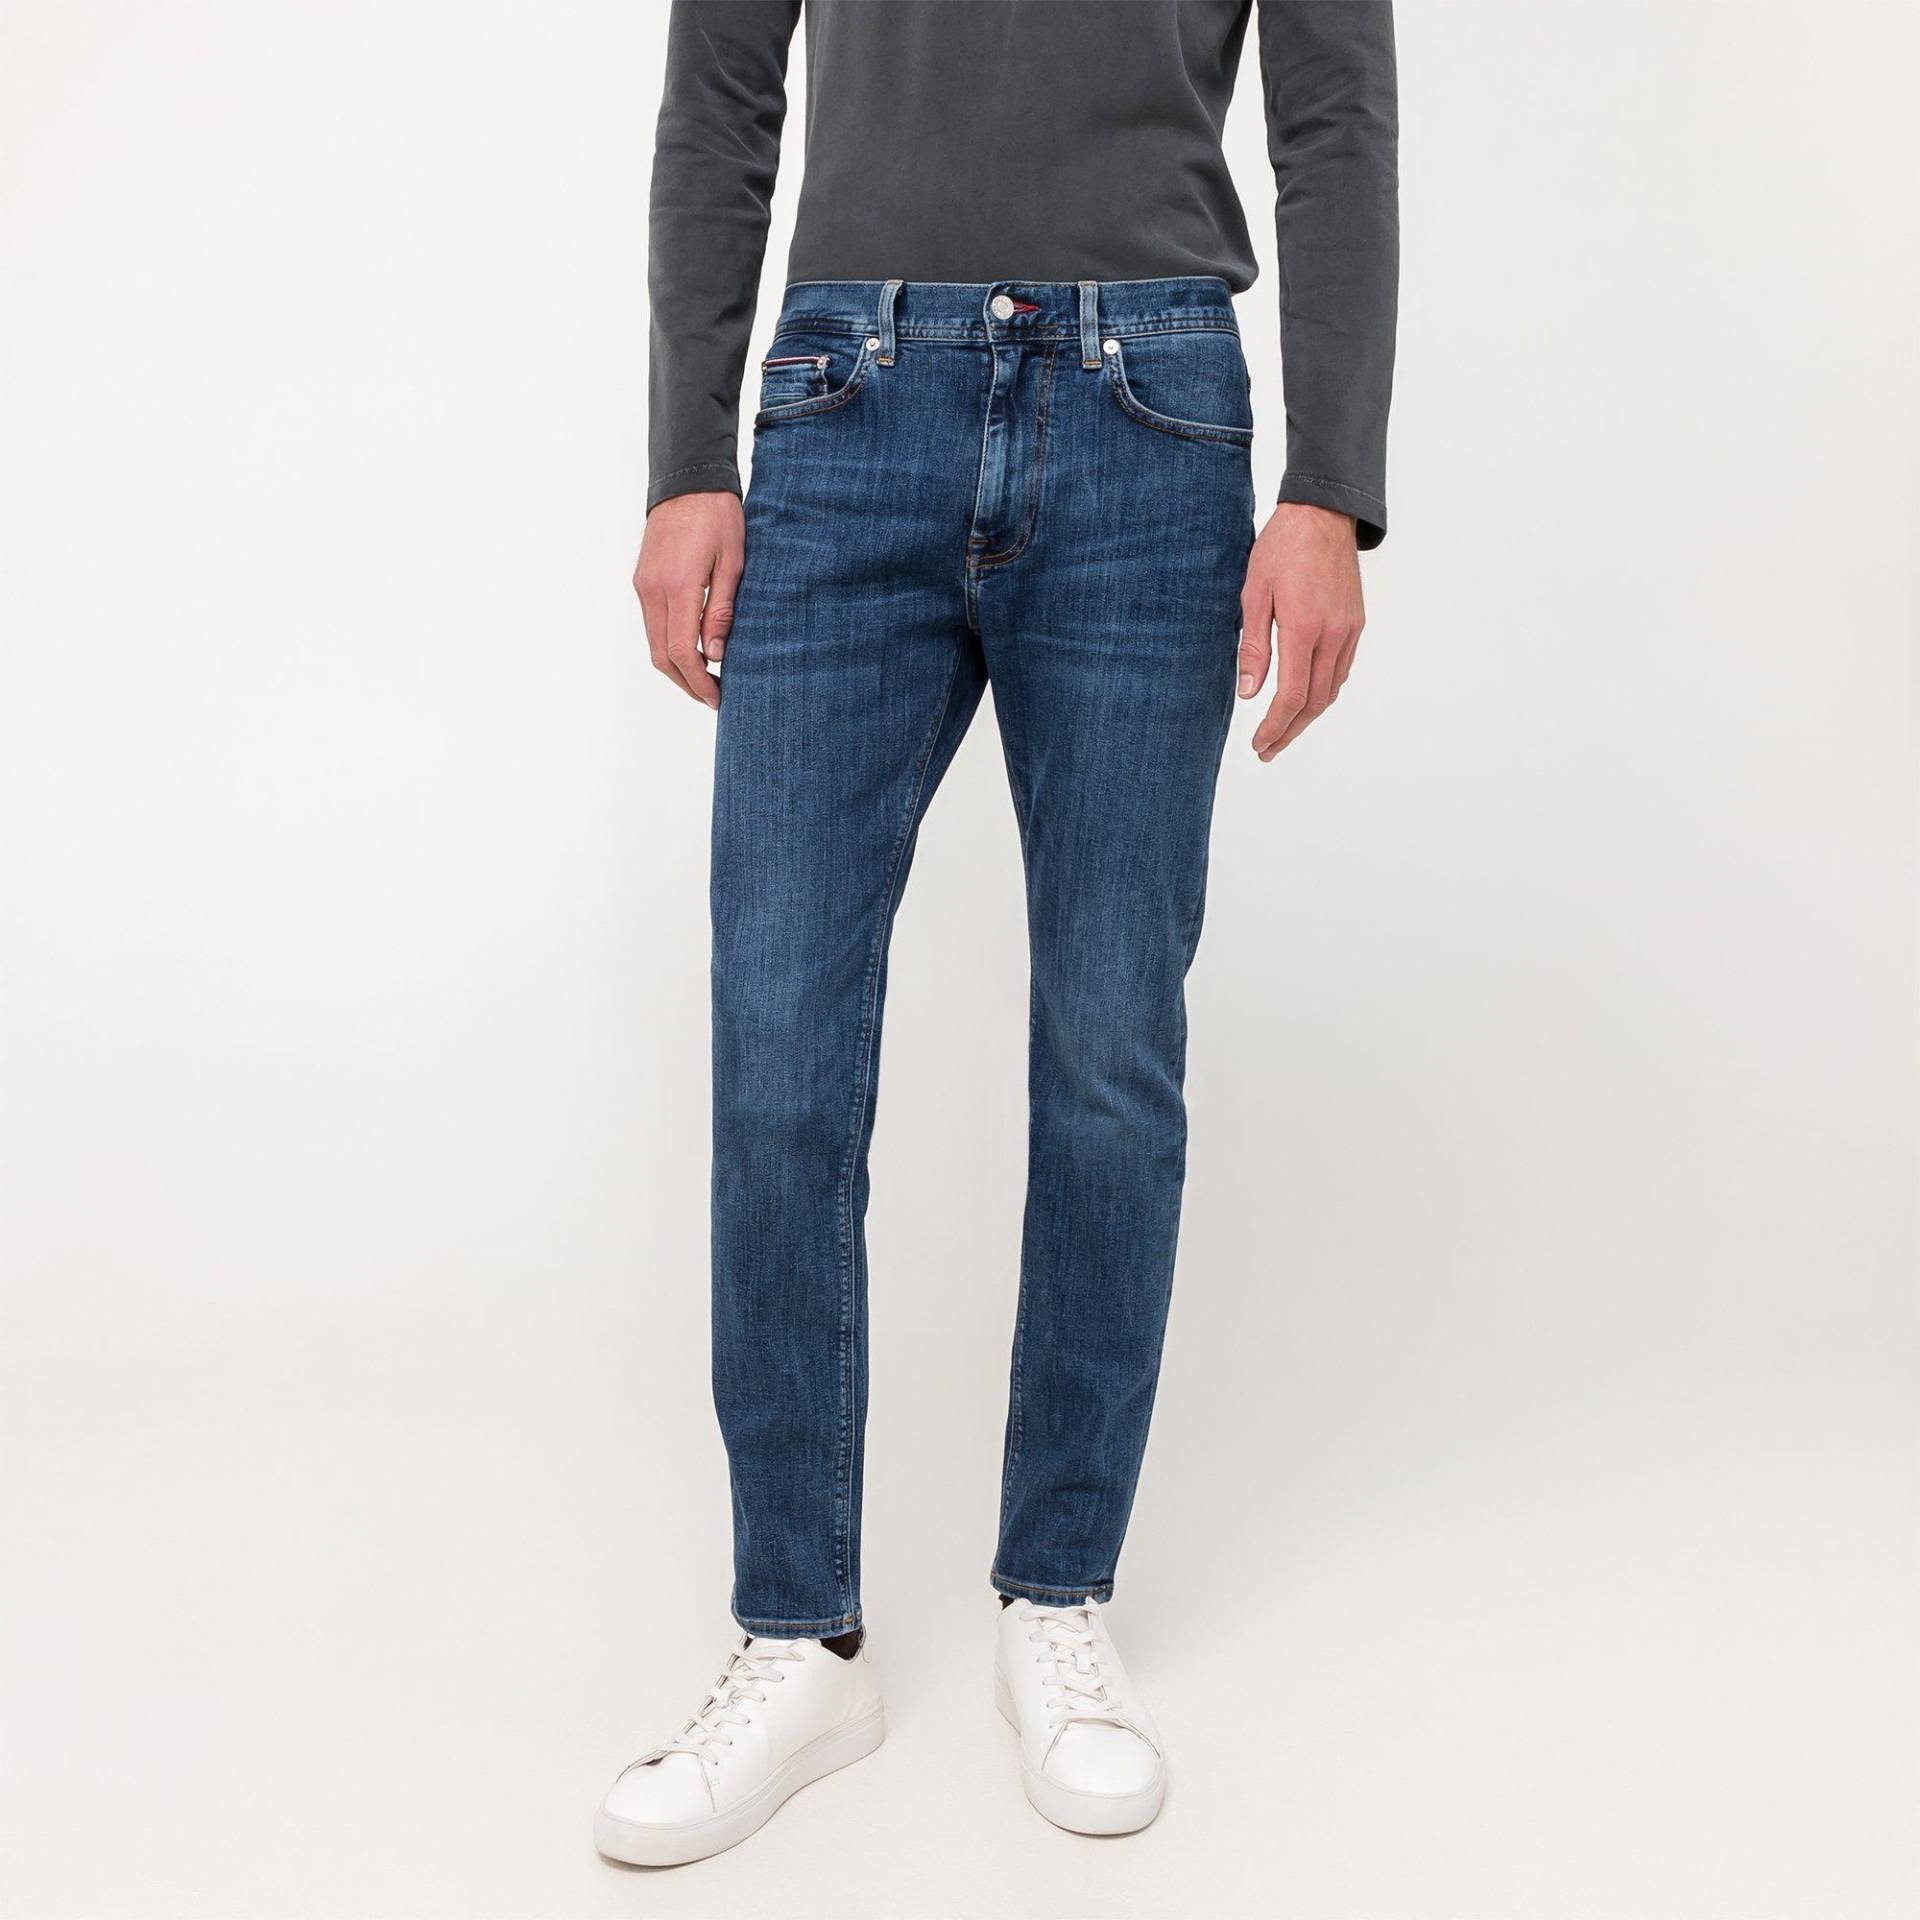 Jeans, Slim Fit Herren Blau  L32/W34 von TOMMY HILFIGER